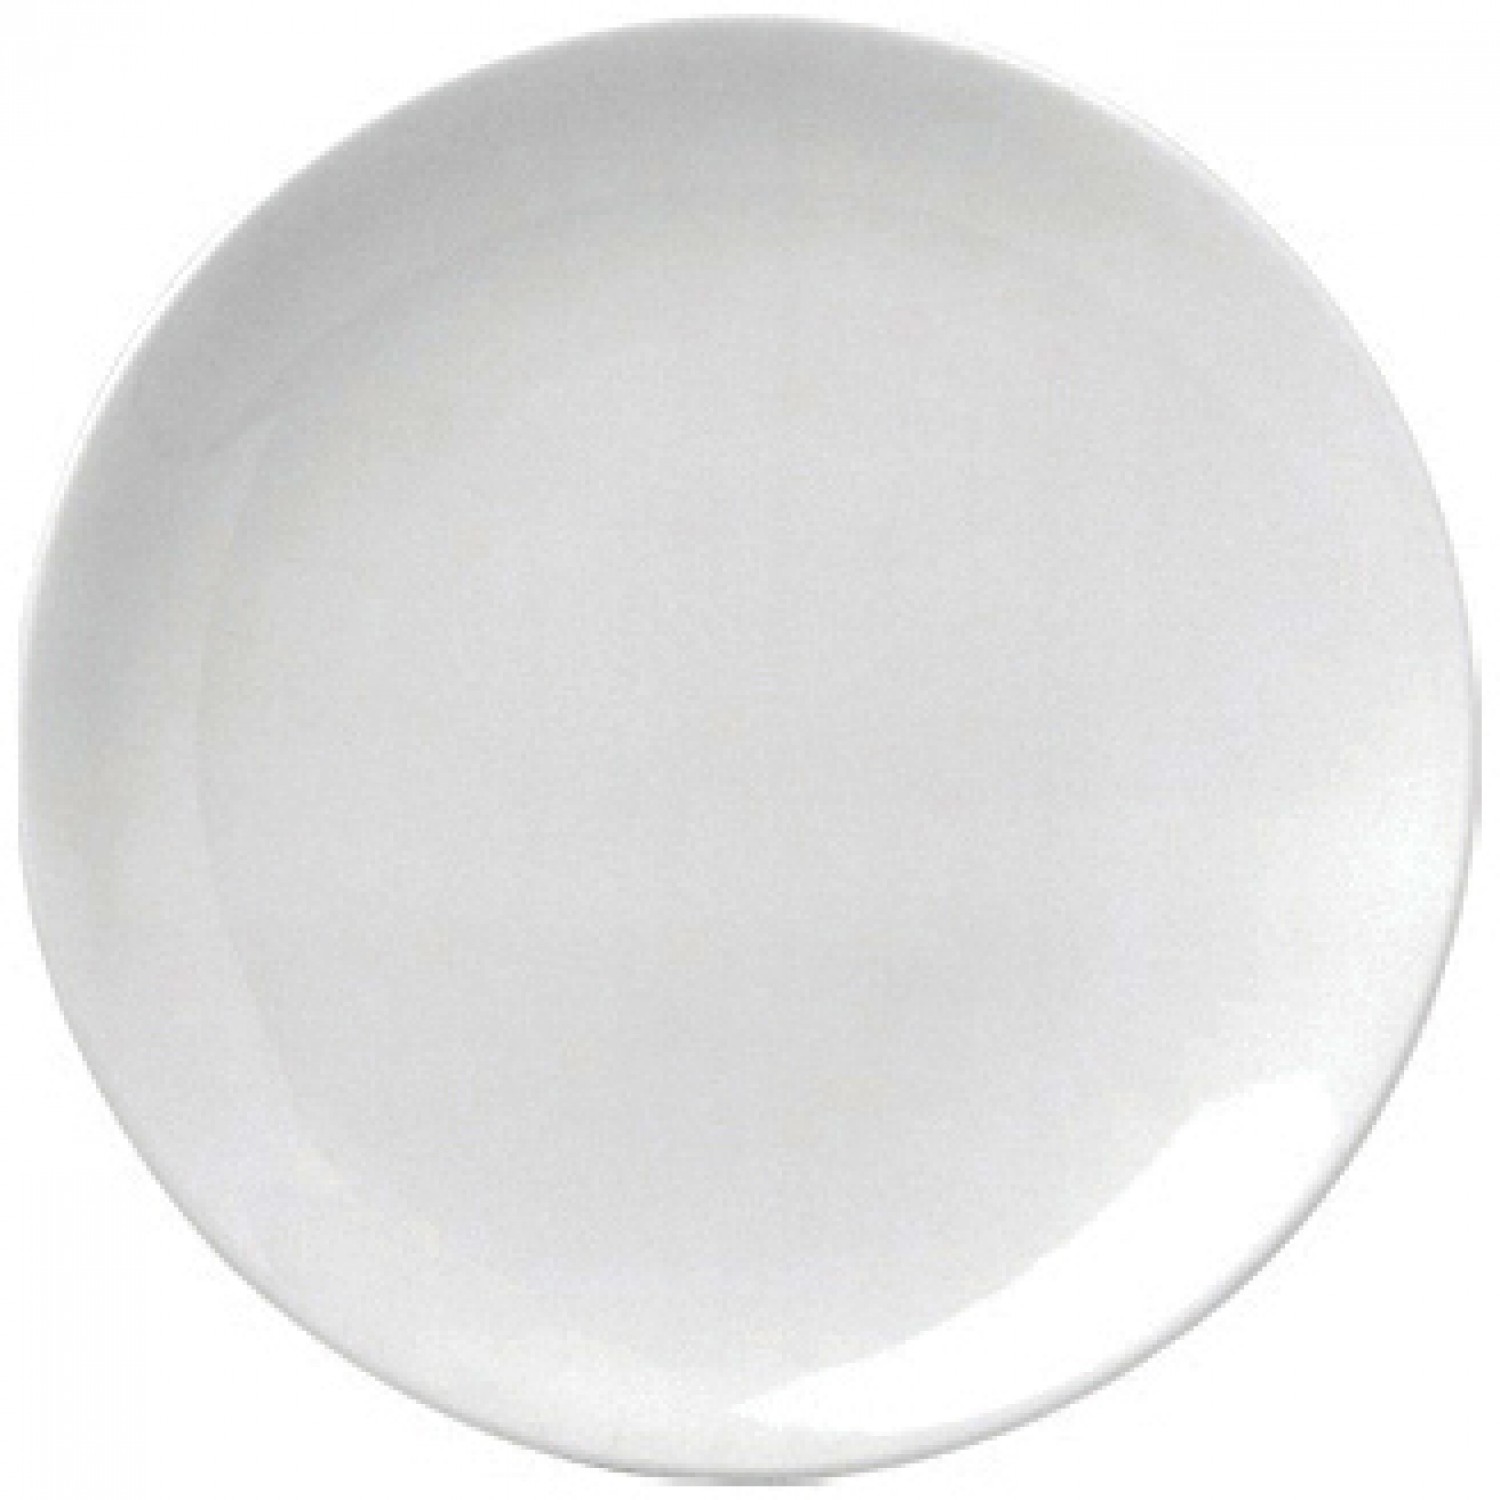 Πιάτο Ρηχό Στρογγυλό Coupe 21cm Άσπρο Πορσελάνης "ΕΟ" Gural 52.84004